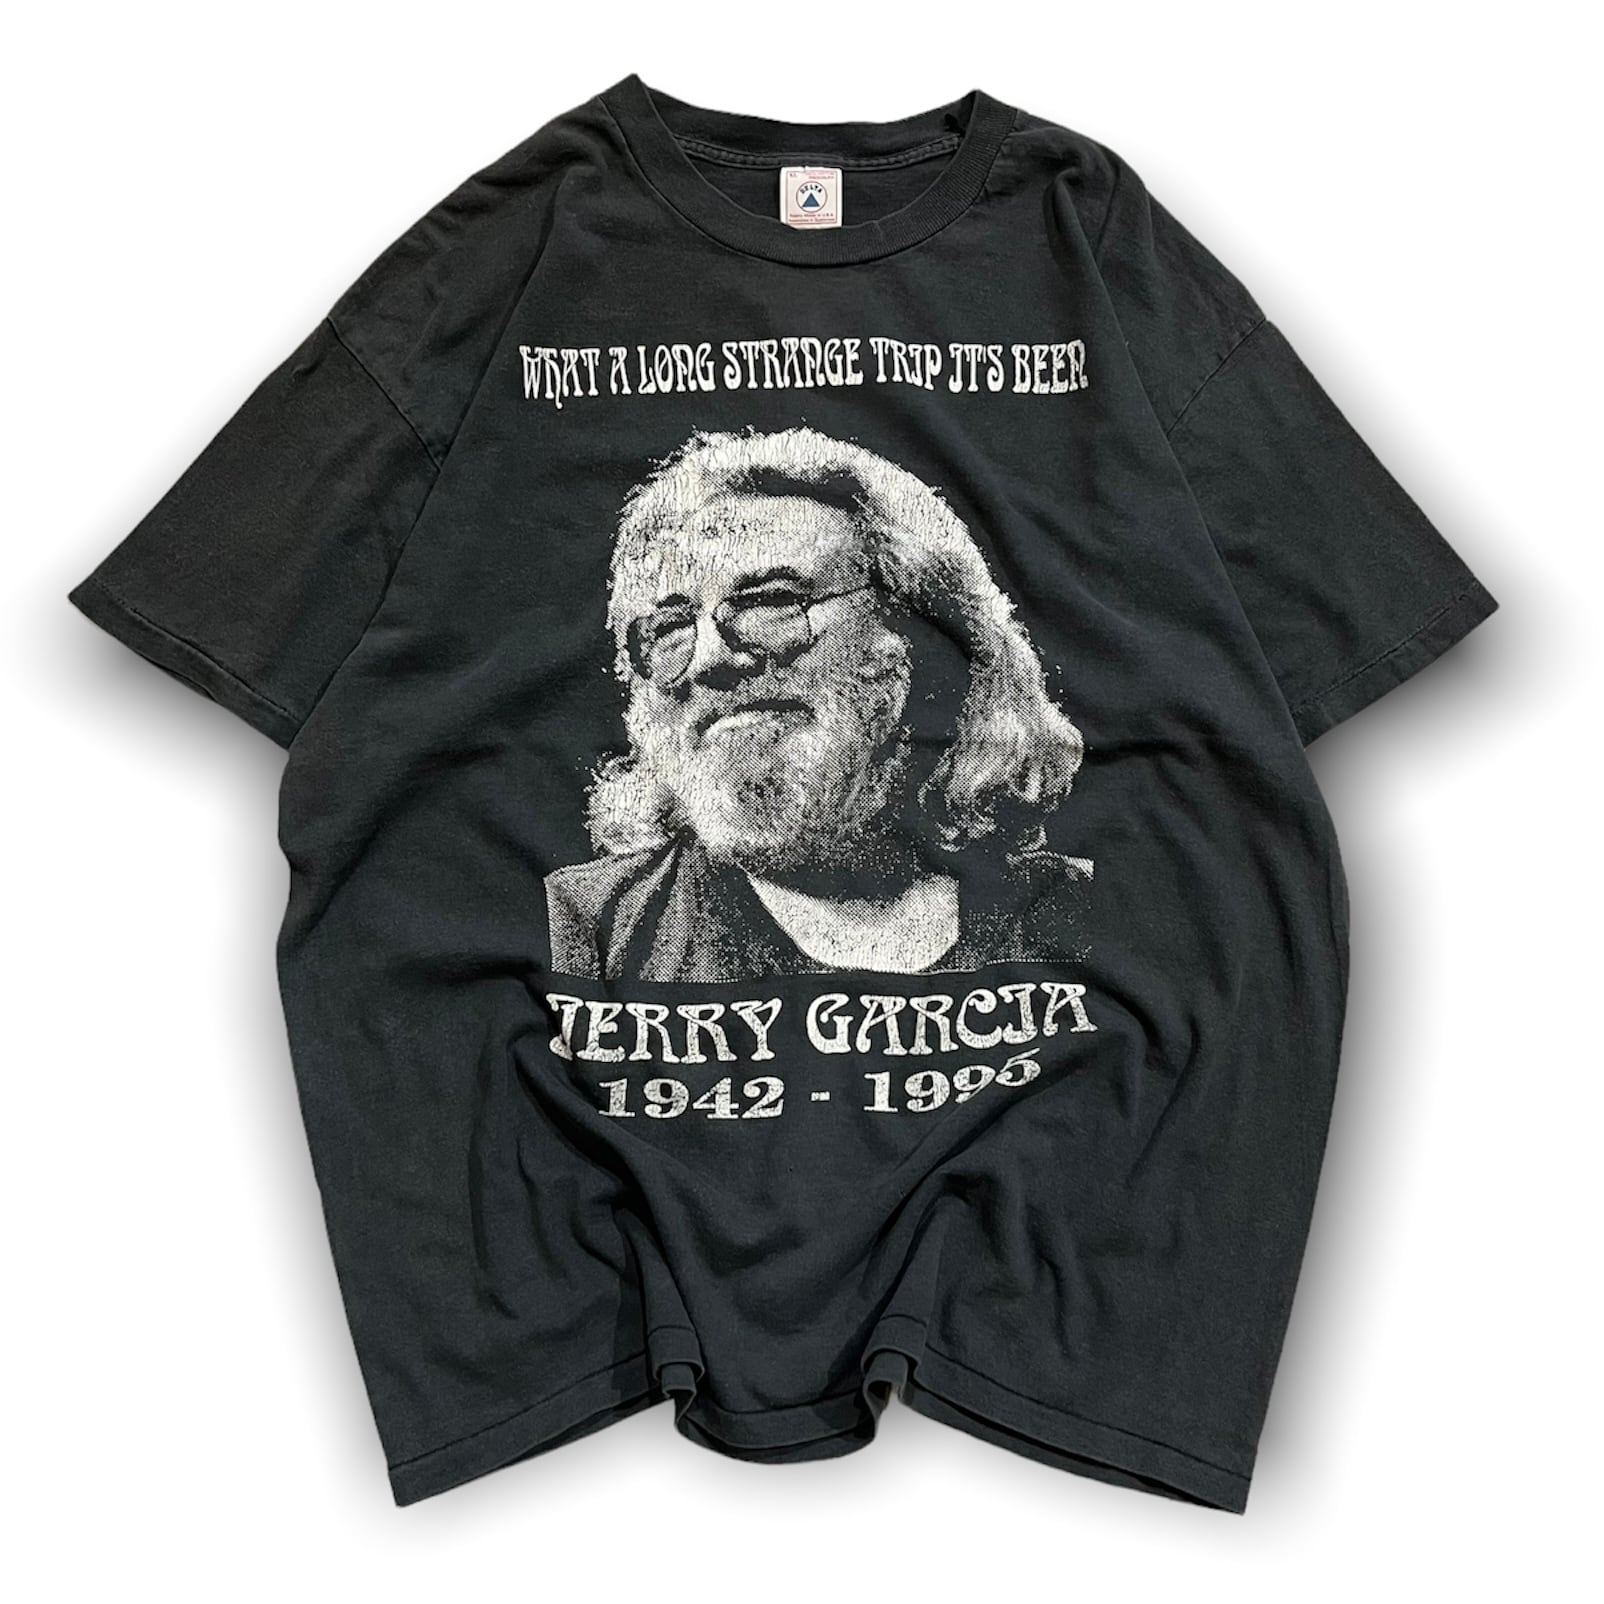 90s グレイトフルデッド ジェリー ガルシア アート プリント 半袖 Tシャツ